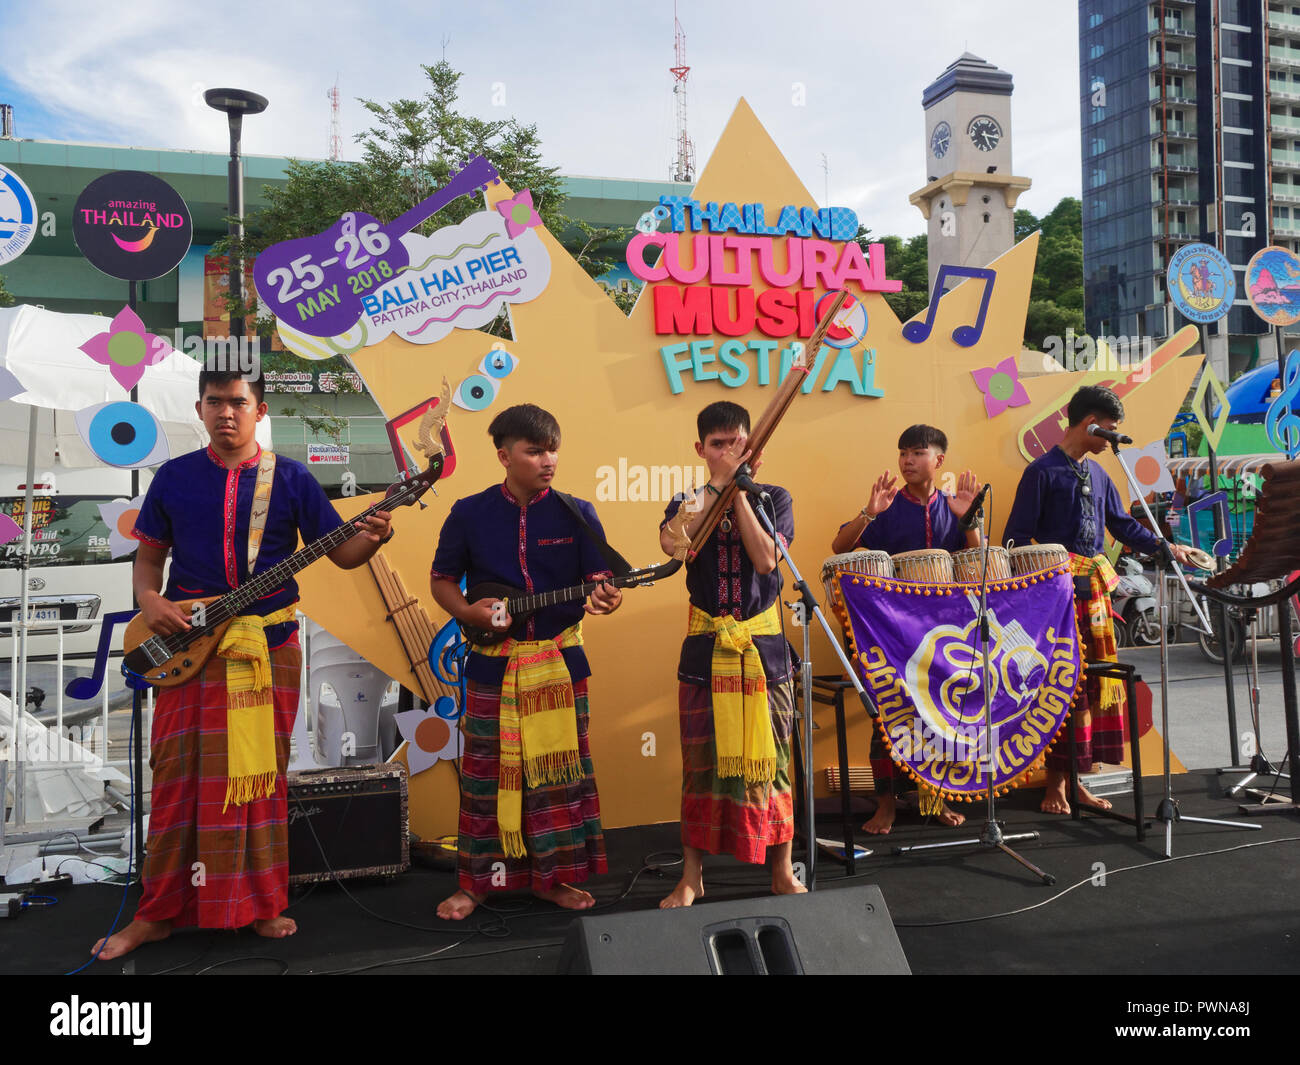 PATTAYA, THAILAND - 25. MAI 2018: Thai lokalen Folk Band aus Isaan auf der kleinen Bühne in Thailand Kulturelle Musik Festival Stockfoto